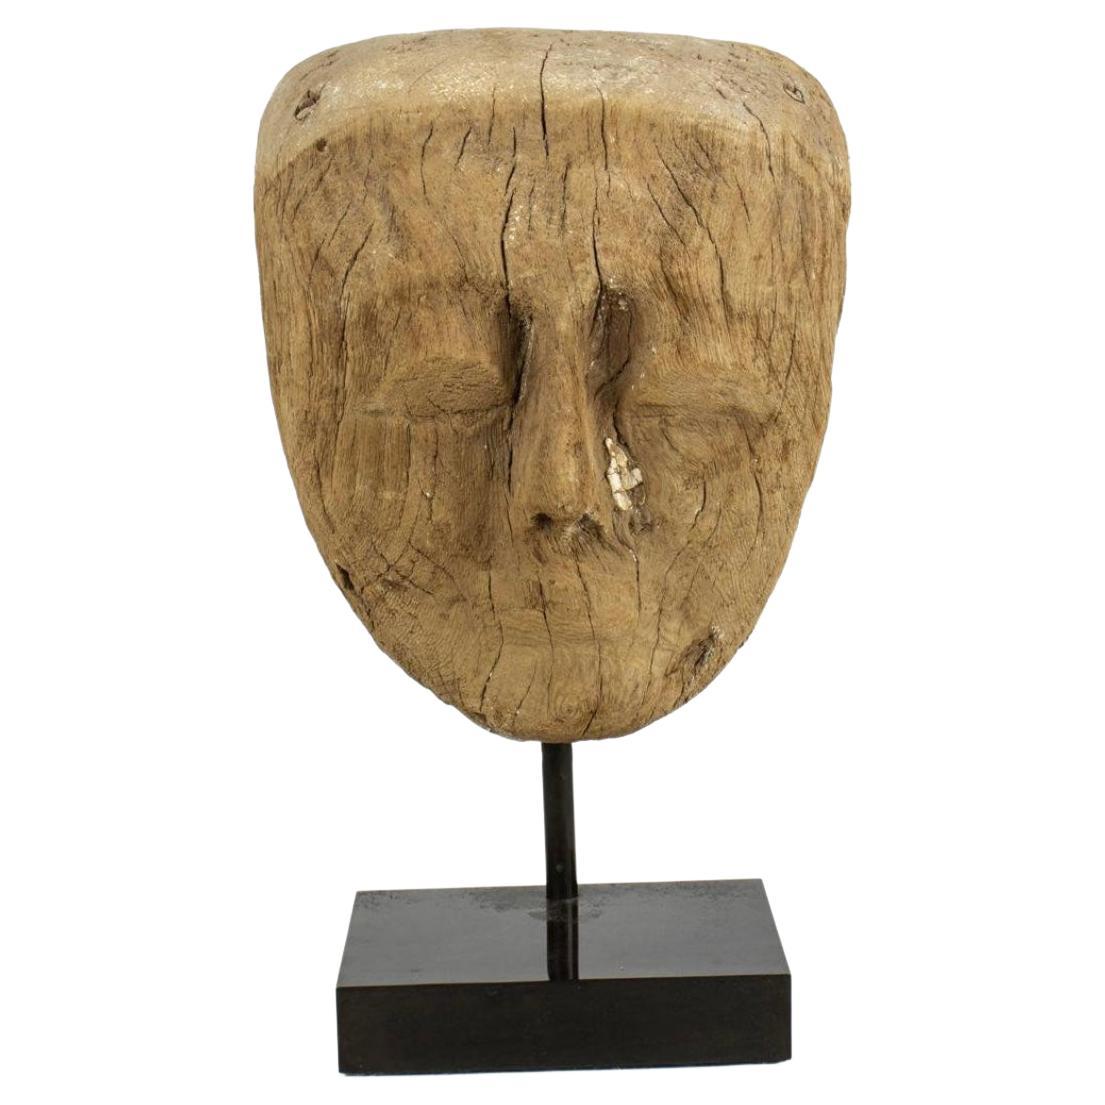 Masque égyptien ancien, 900-600 avant J.-C.